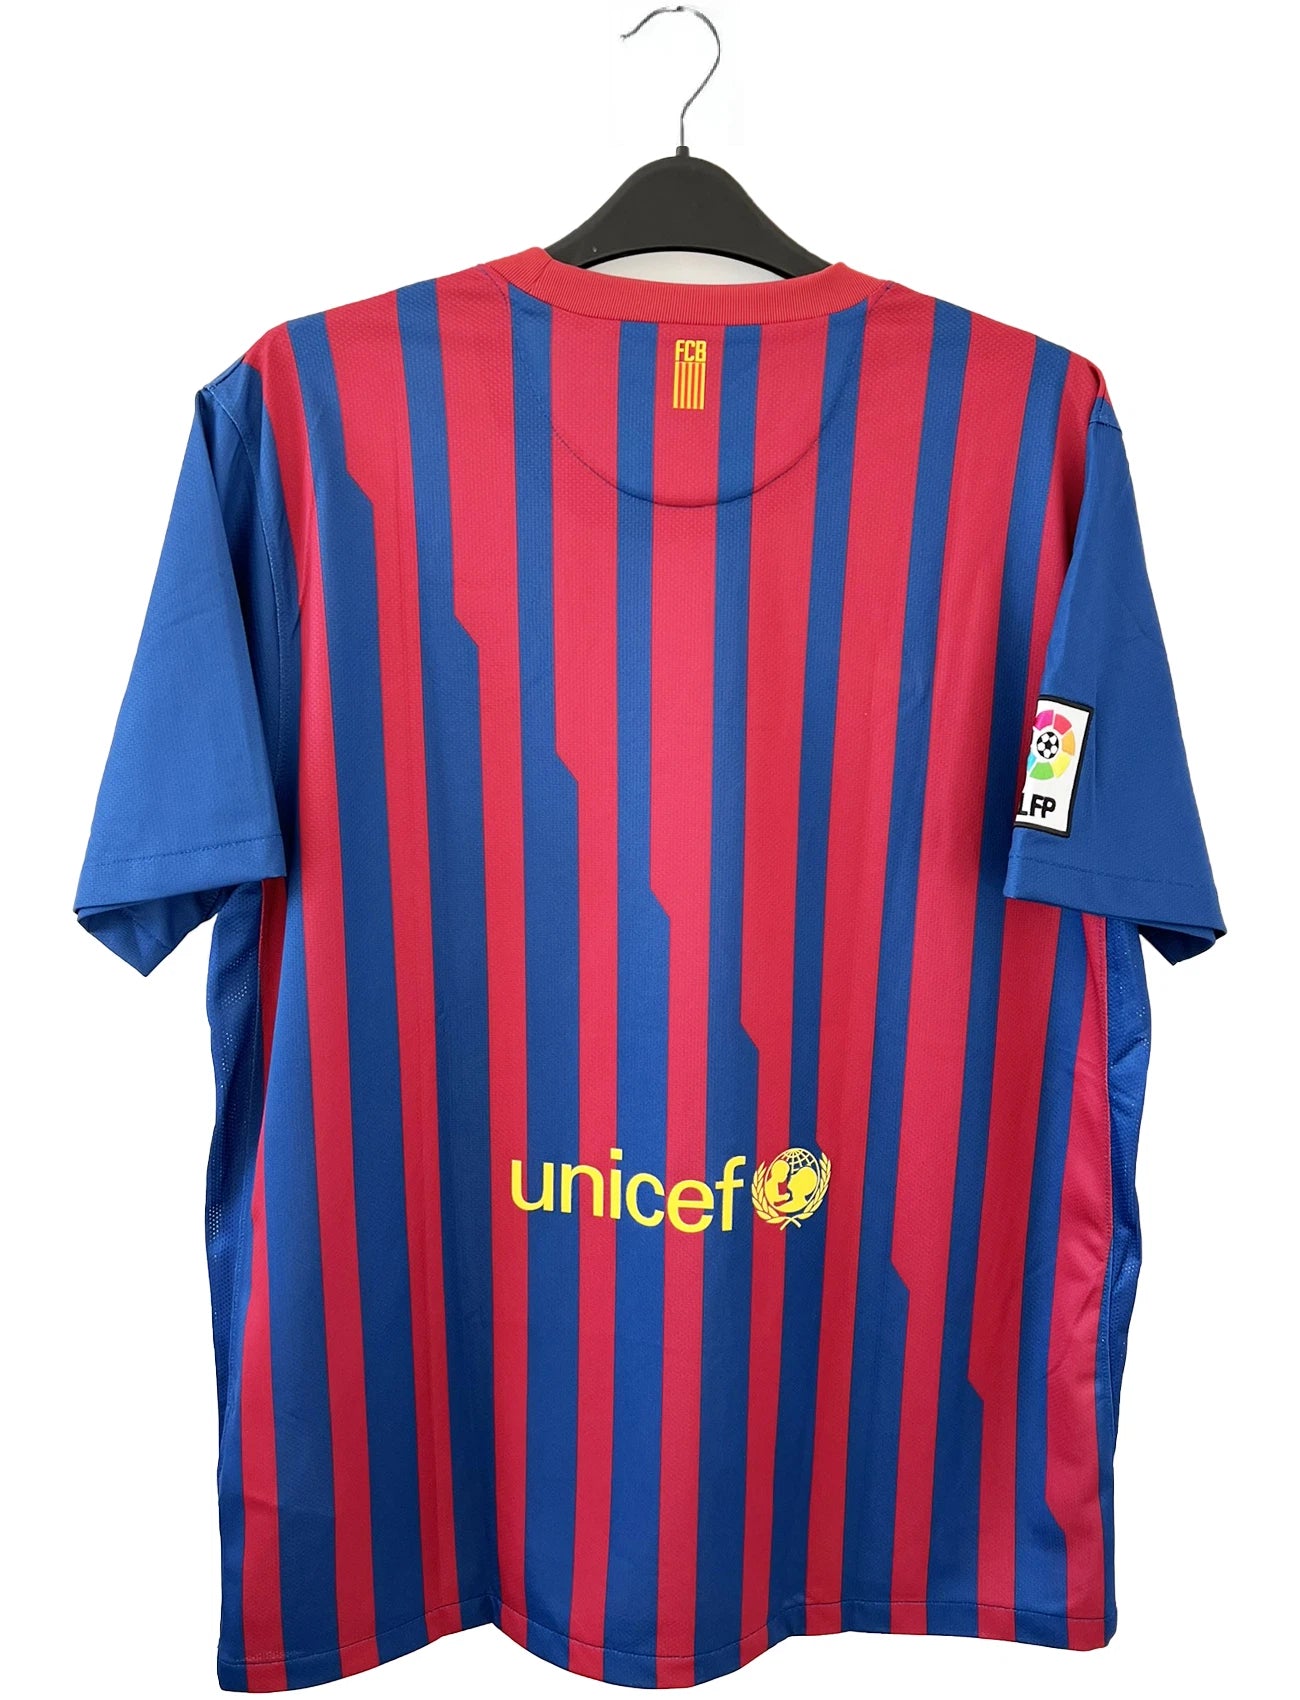 Maillot de foot vintage du FC Barcelone de la saison 2011/2012. Le maillot est de couleur rouge et bleu. On peut retrouver l'équipementier nike et le sponsor qatar foundation. Il s'agit d'un maillot authentique comportant les numéros 419877-488.